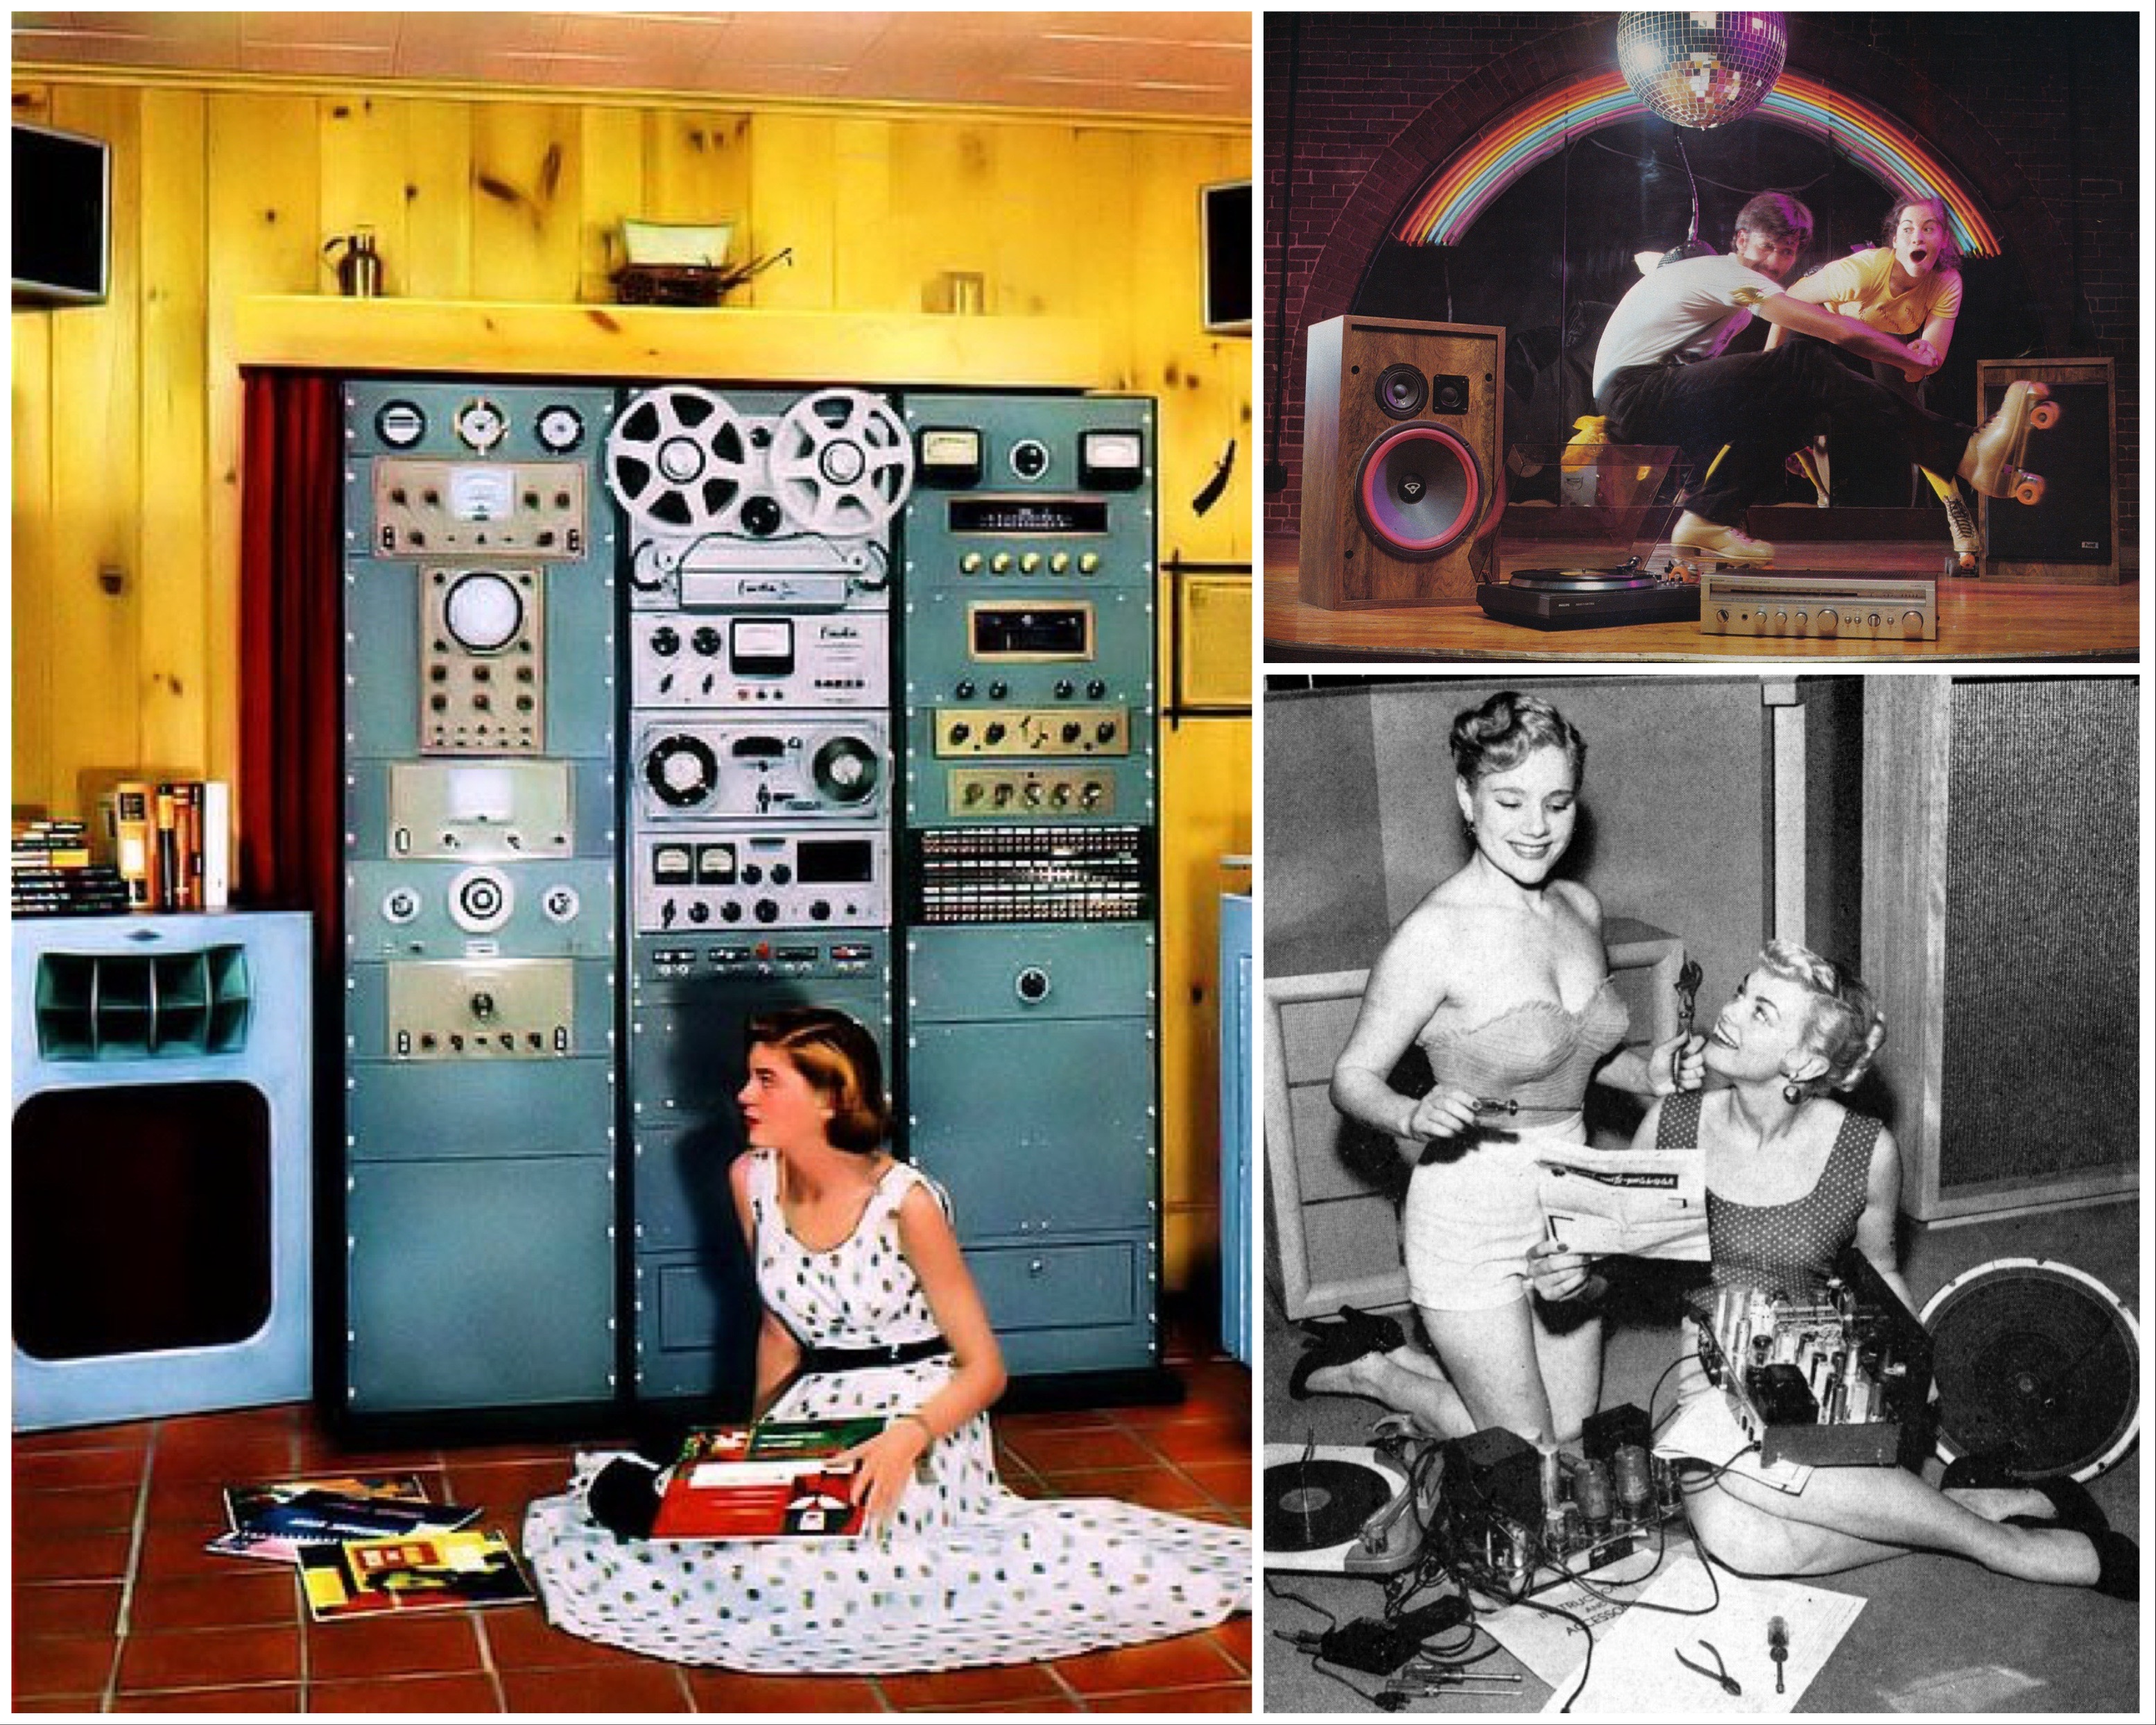 Látott már valaki mainframe számítógép méretű hifitornyot konyhaszerű helyiségbe zsúfolva (balra), ami előtt olyan pózban ücsörög a nő, mint aki Coca-Cola reklámot forgat az Édenkertben? Ugye, hogy nem. És mit csinál a szivárványos képen (jobbra fent) a fiatal pár, főleg a bajuszos-görkoris hipszter srác? Hogy nem az elmélyült zenehallgatás okozott nála katarzist, az biztos, mert semelyik készülék nincs bedugva. A barkácsoló lányokról (jobbra lent) készült fotó alighanem a már említett erősítőépítő háziasszonyok heroikus ábrázolása, de az is lehet, hogy a jobb oldali lány azbesztbőrét reklámozzák, amivel mosolyogva kibírható az ölben tartott csöves erősítőből áradó hő és kóbor áram is. Már csak amiatt kell aggódni, hogy a doboz nélküli hangszóróból milyen szörnyű zajok fognak előtörni a lemezjátszó bekapcsolása után.